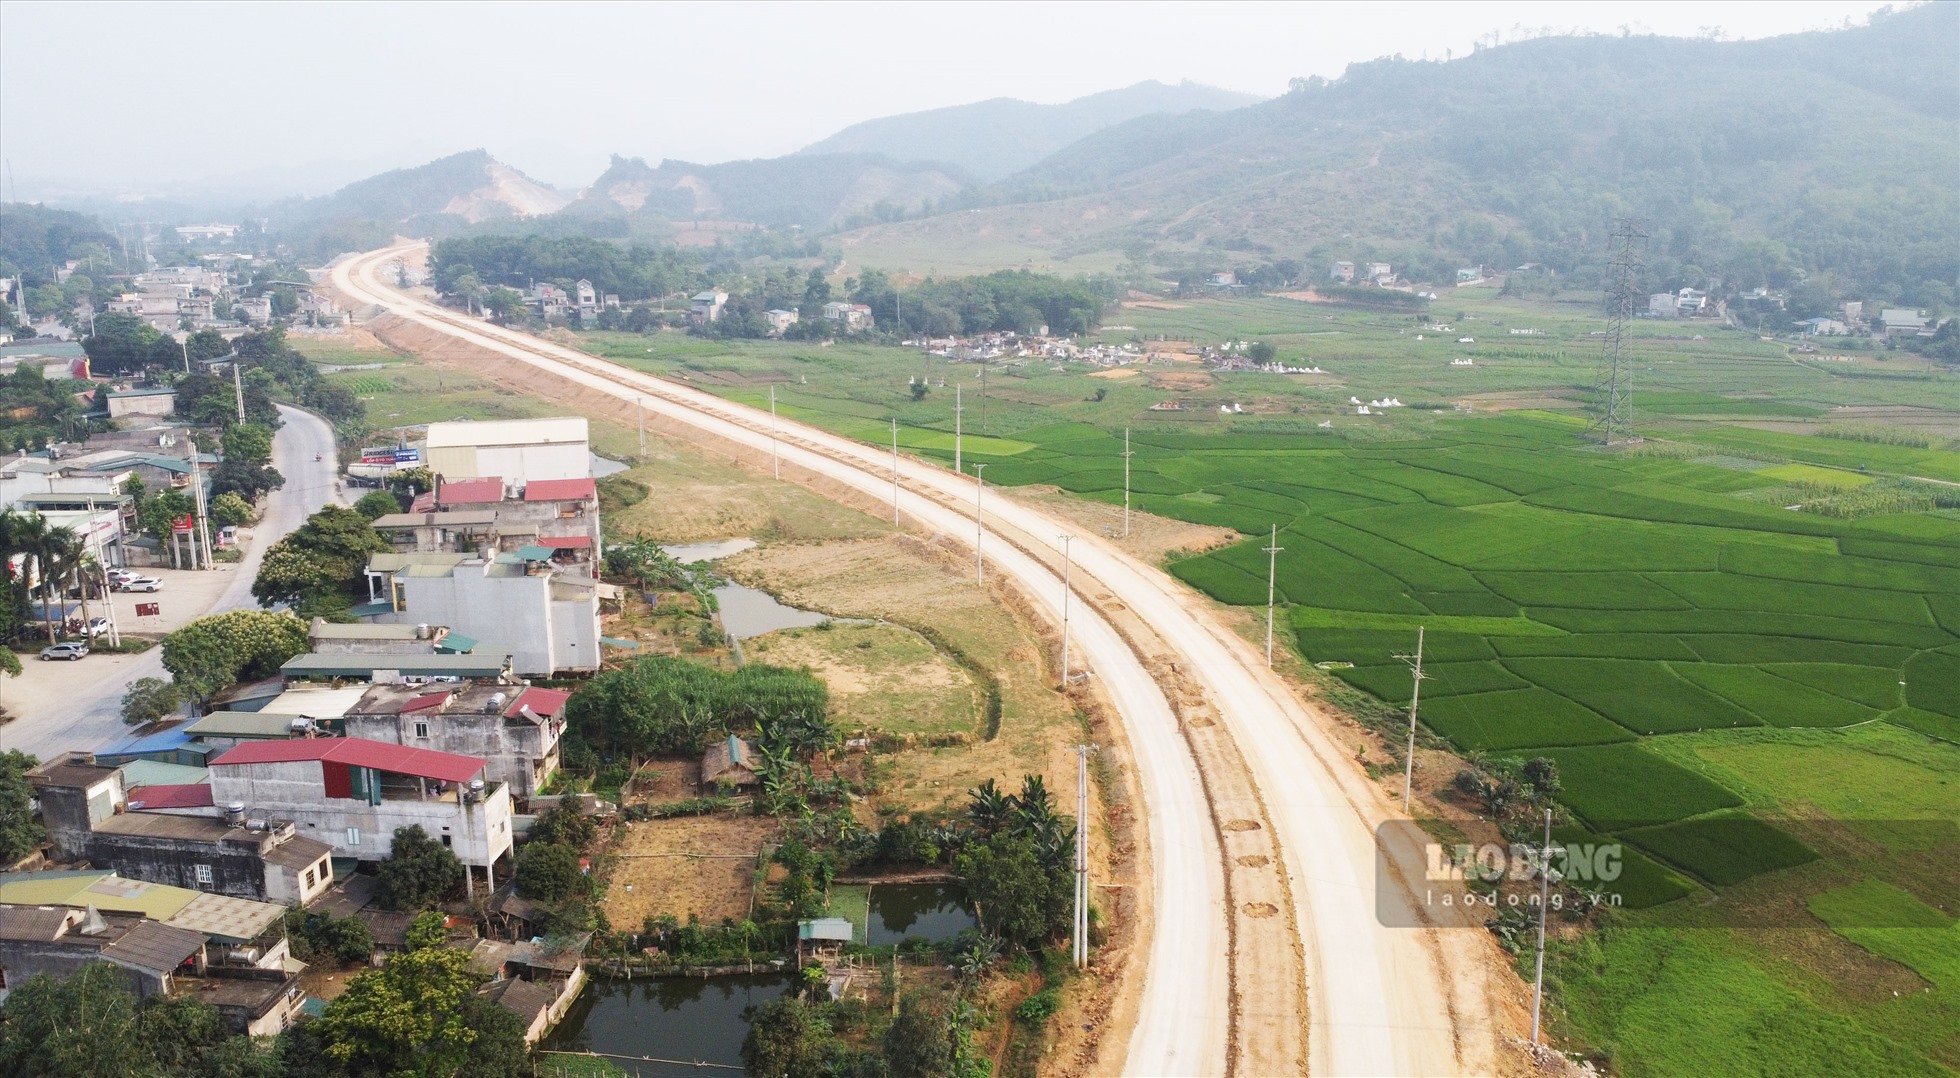 Cao tốc Tuyên Quang - Phú Thọ có chiều dài 40,2 km kết nối với nút giao IC9 của cao tốc Nội Bài - Lào Cai, dự án có tổng mức đầu tư giai đoạn 1 hơn 3.700 tỉ đồng với 2 làn xe, vận tốc 80km/h. Theo yêu cầu của Thủ tướng dự án này đang được điều chỉnh để triển khai ngay giai đoạn 2 trong năm 2023 với 4 làn xe, vận tốc 120km/h.